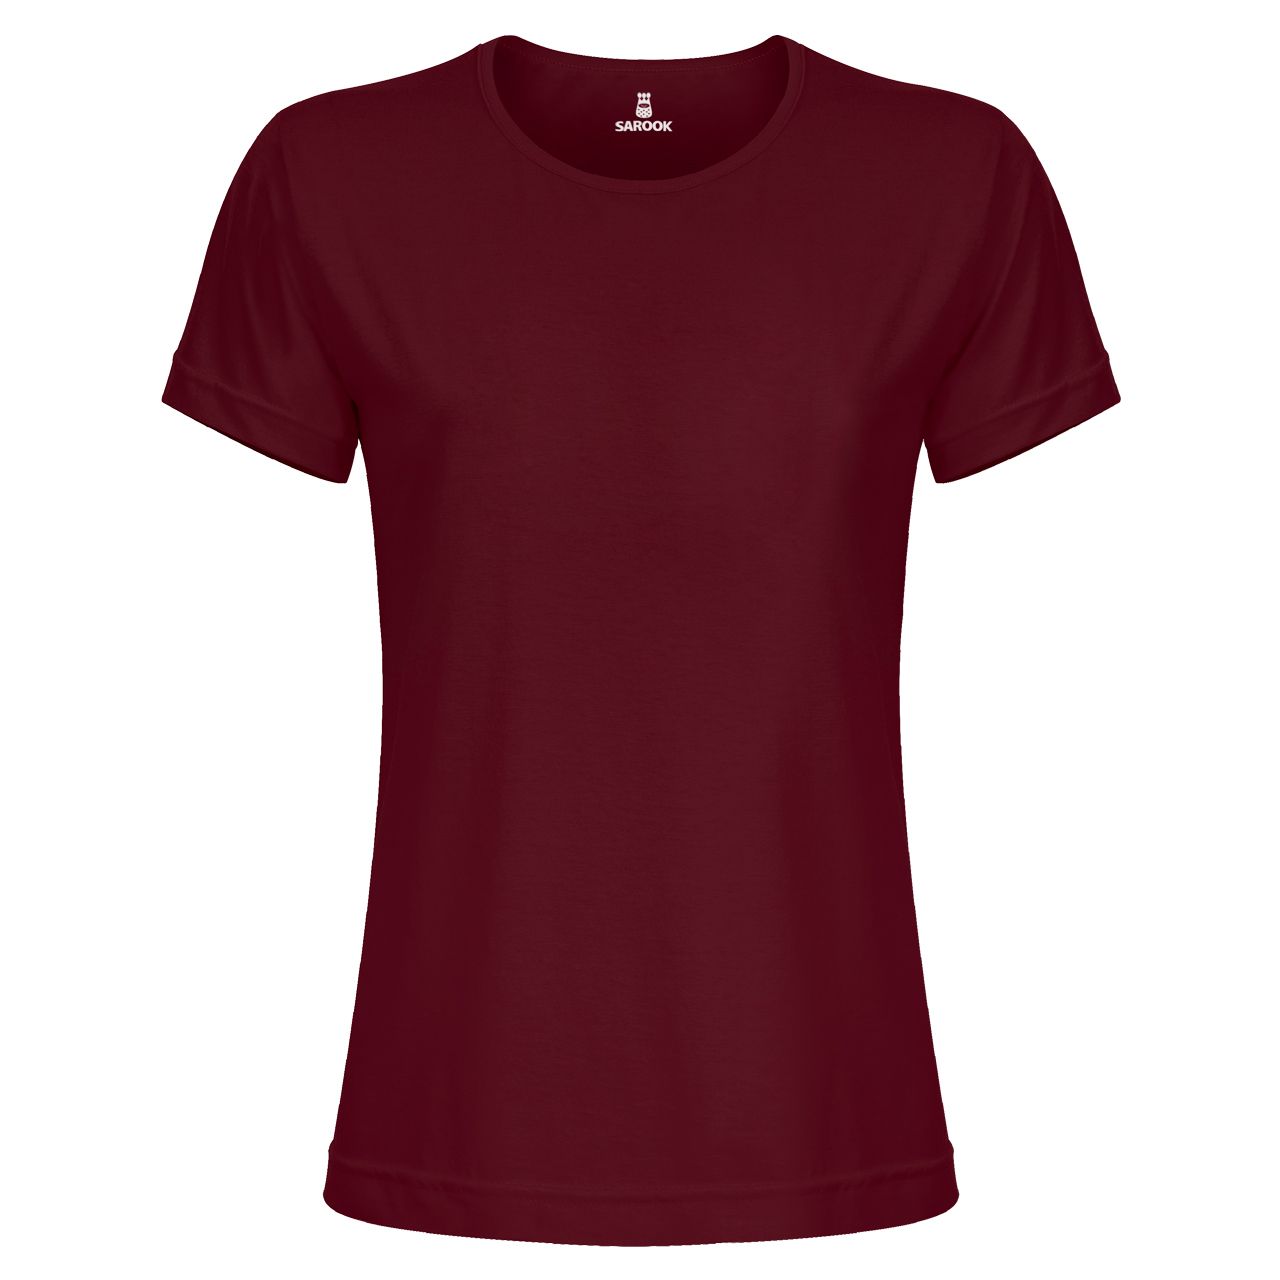 تی شرت آستین کوتاه زنانه ساروک مدل TSHPYR کد 04 رنگ زرشکی -  - 1